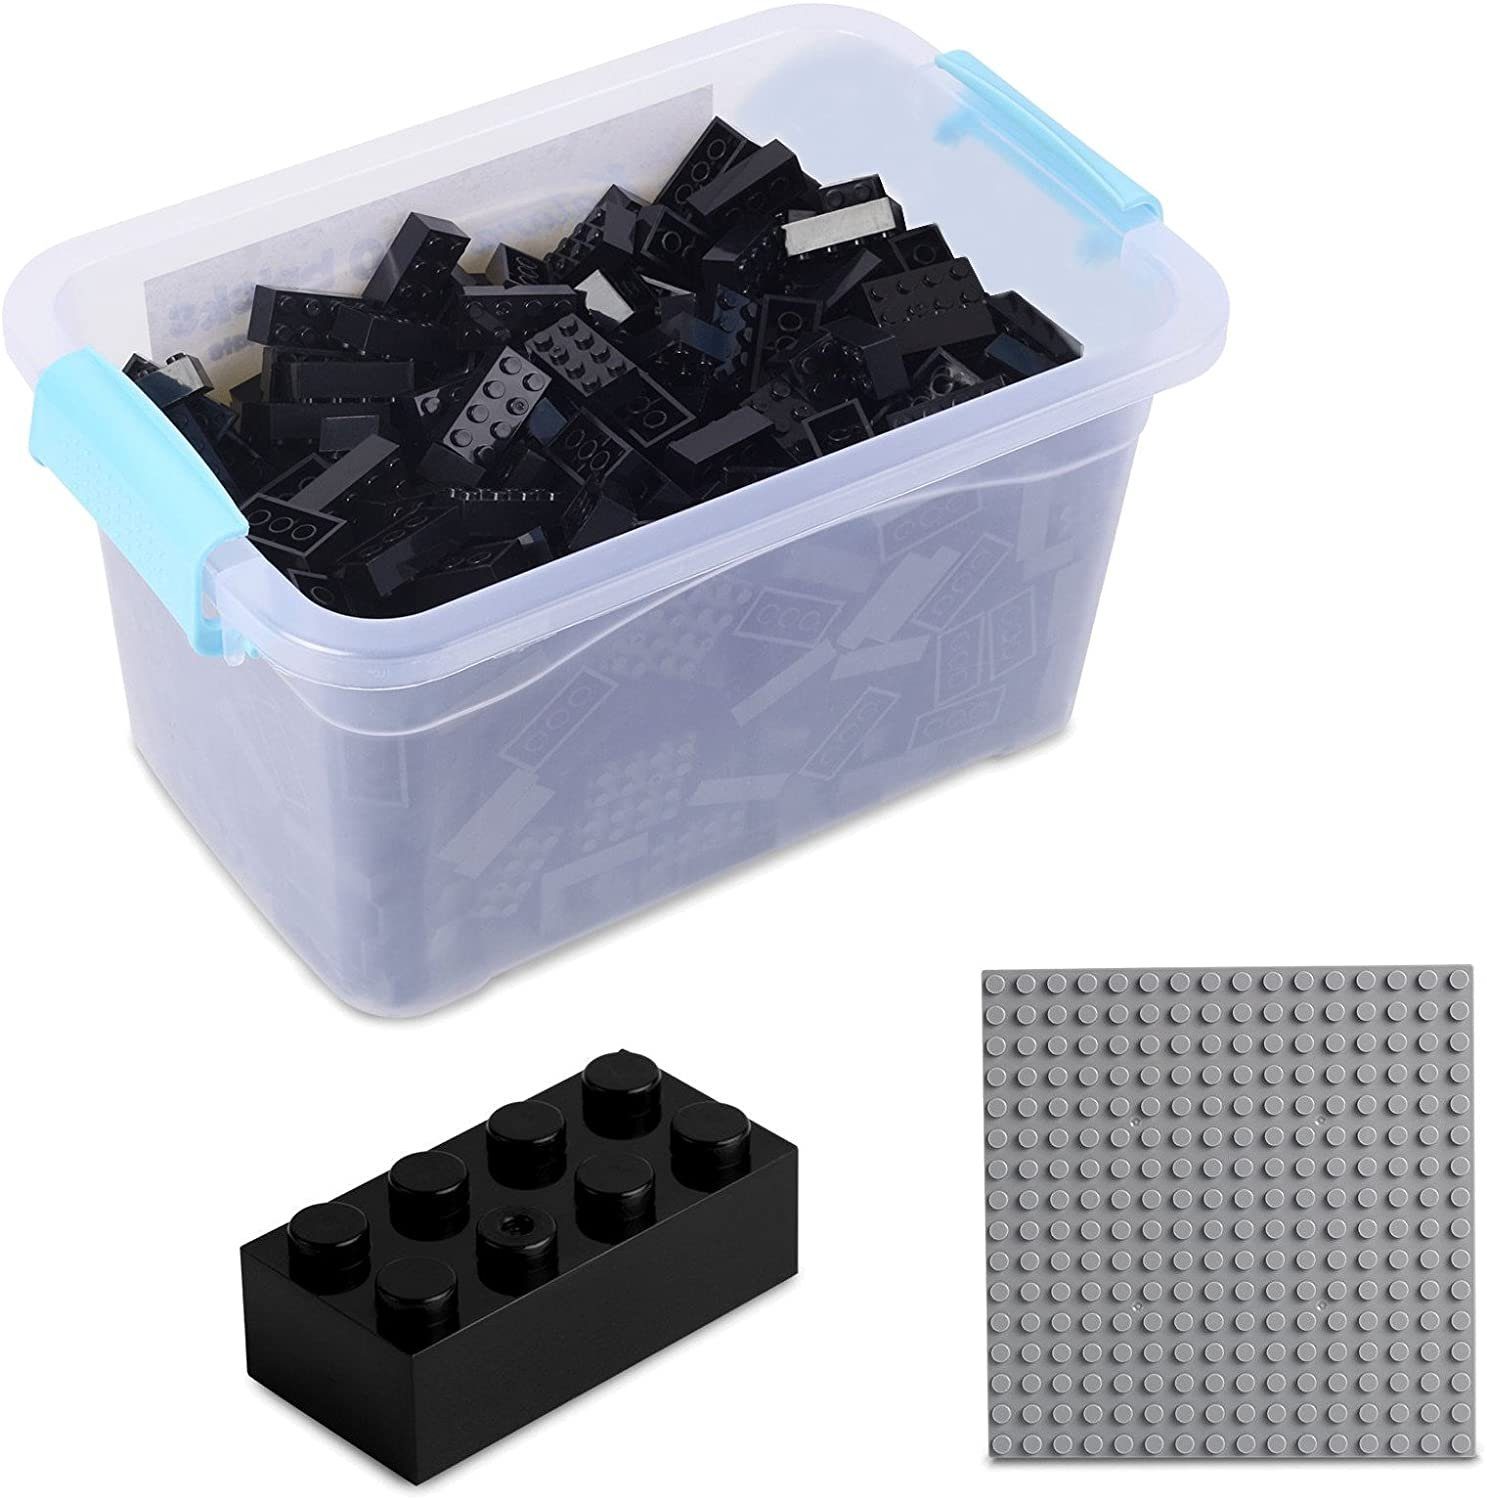 Katara Konstruktionsspielsteine Bausteine Box-Set mit 520 Steinen + Platte + Box, (3er Set), Kompatibel zu allen Anderen Herstellern - verschiedene Farben schwarz